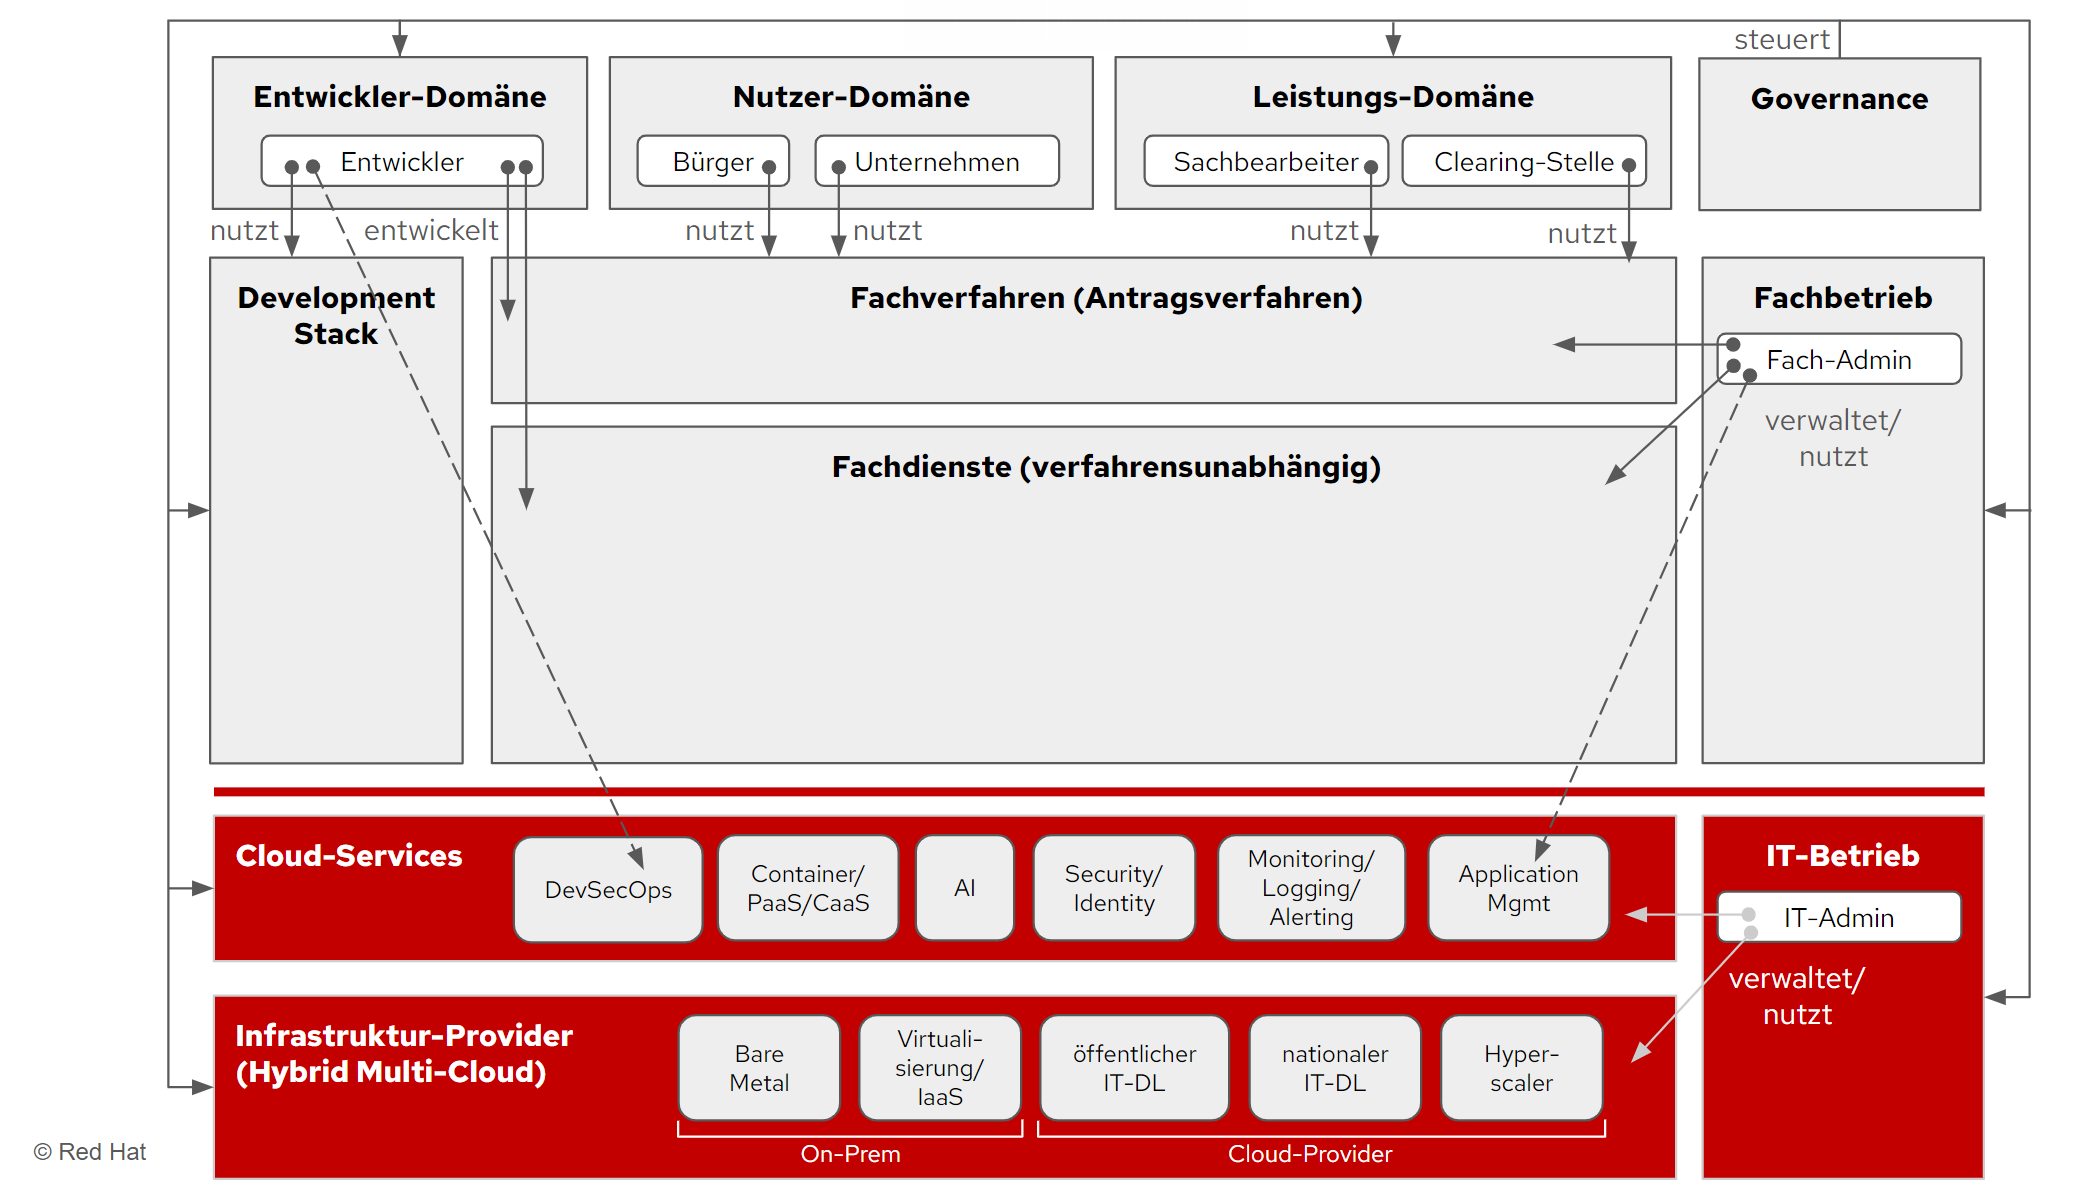 Entwurf_Systematik_technische_OZG_Rahmenarchitektur